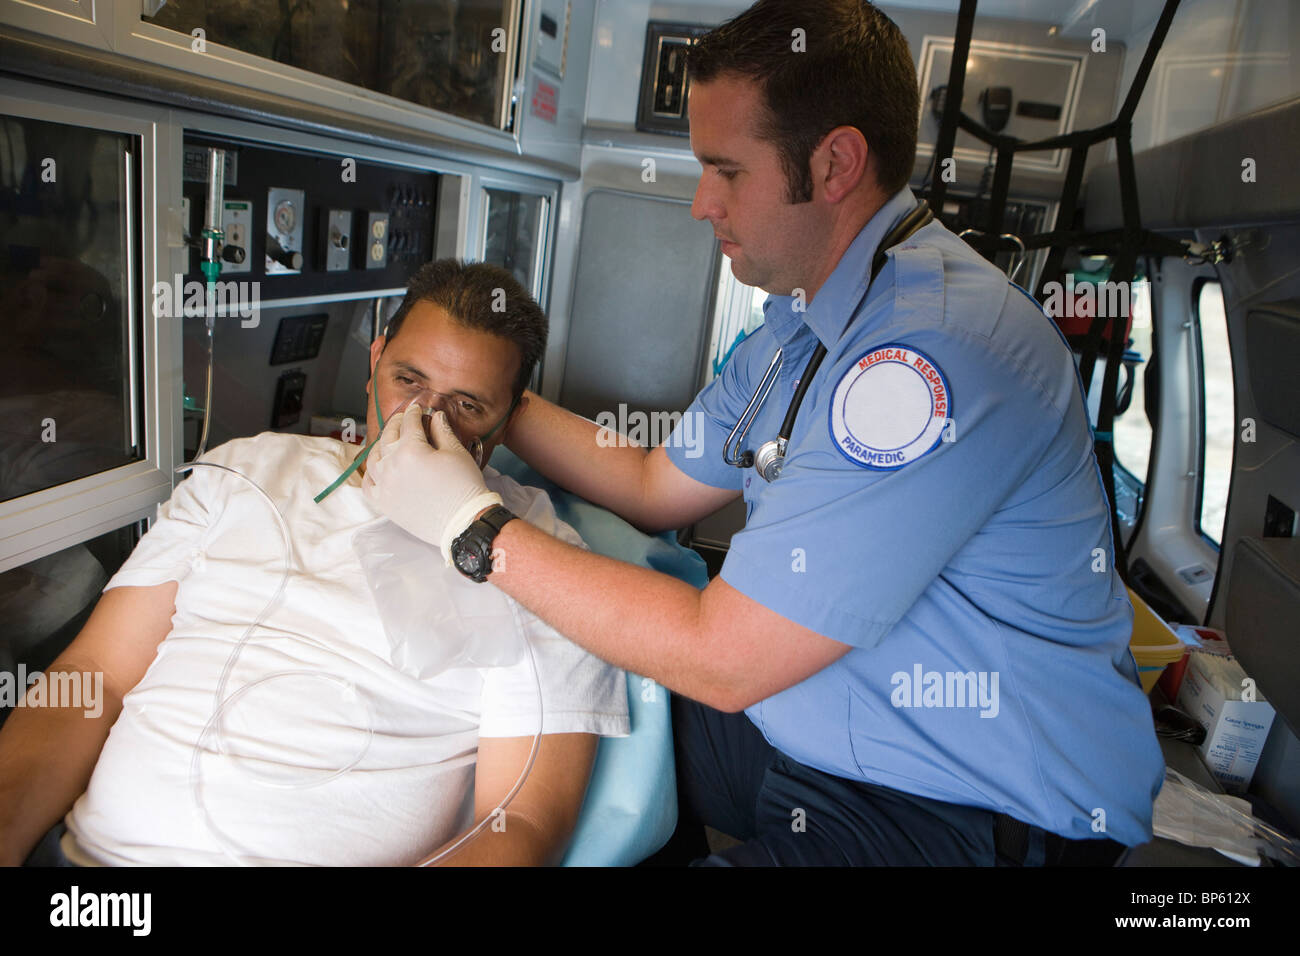 Ambulance ambulancier tendant victime dans Banque D'Images